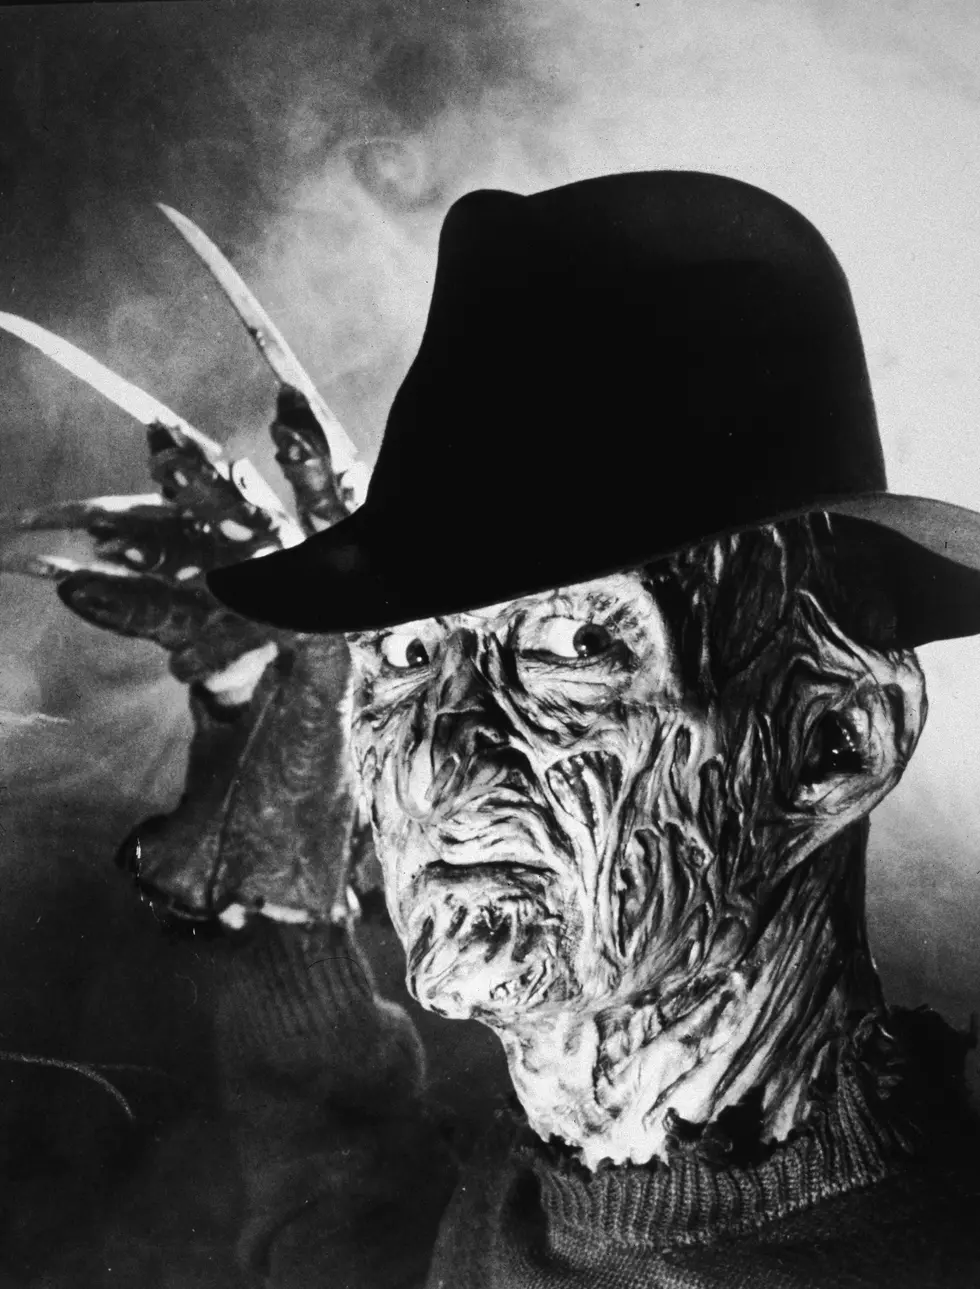 Better Movie Monster – Freddy Krueger or Alien?